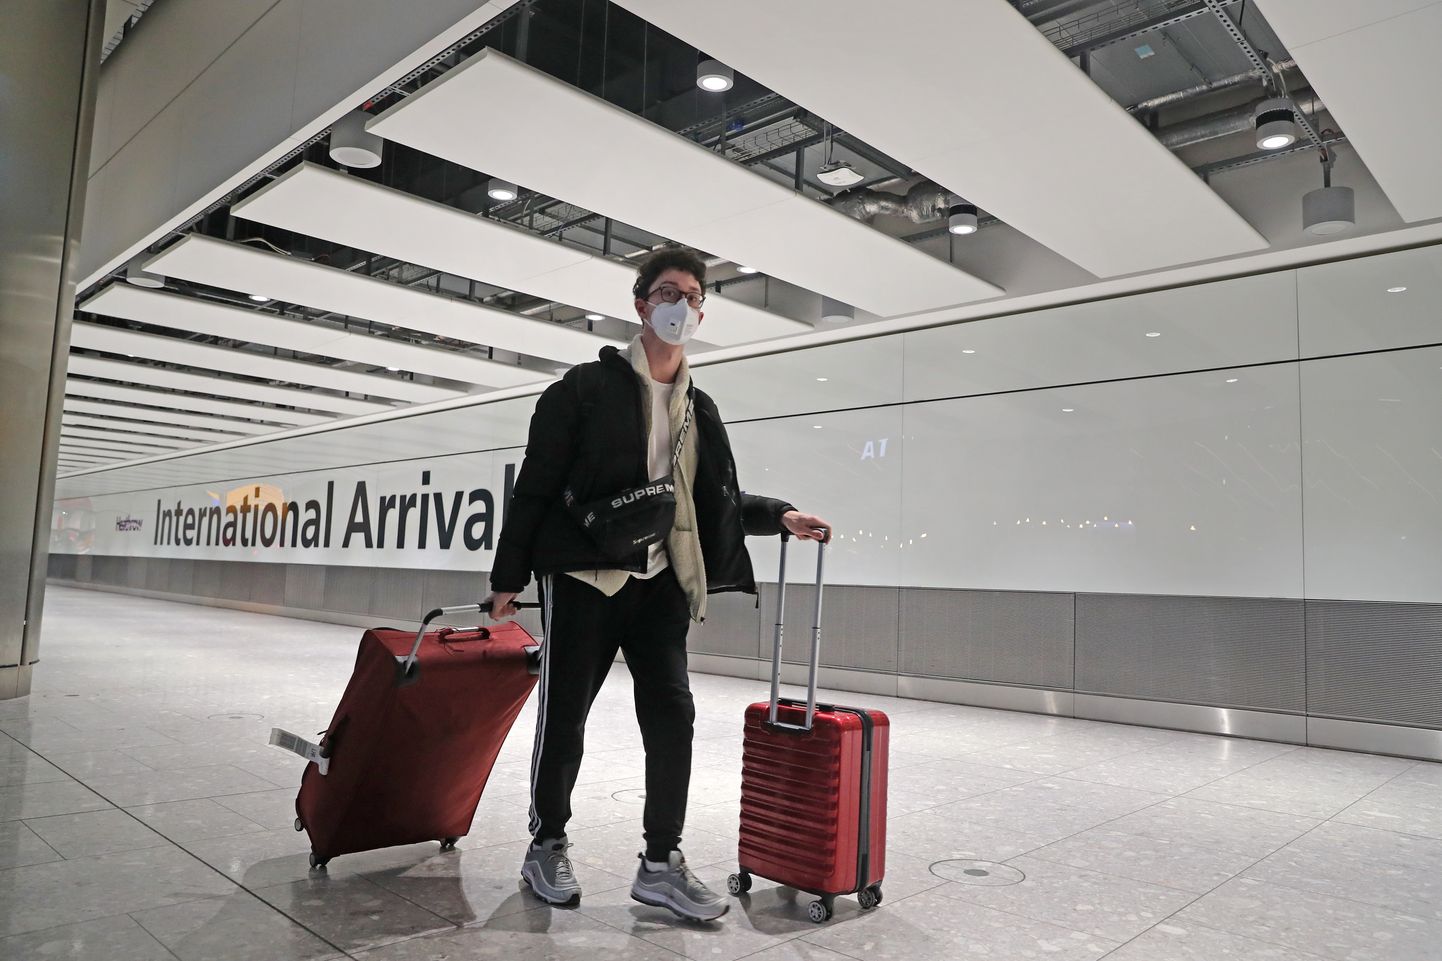 Pilt on illustreeriv: reisija Heathrowi lennujaamas Londonis.